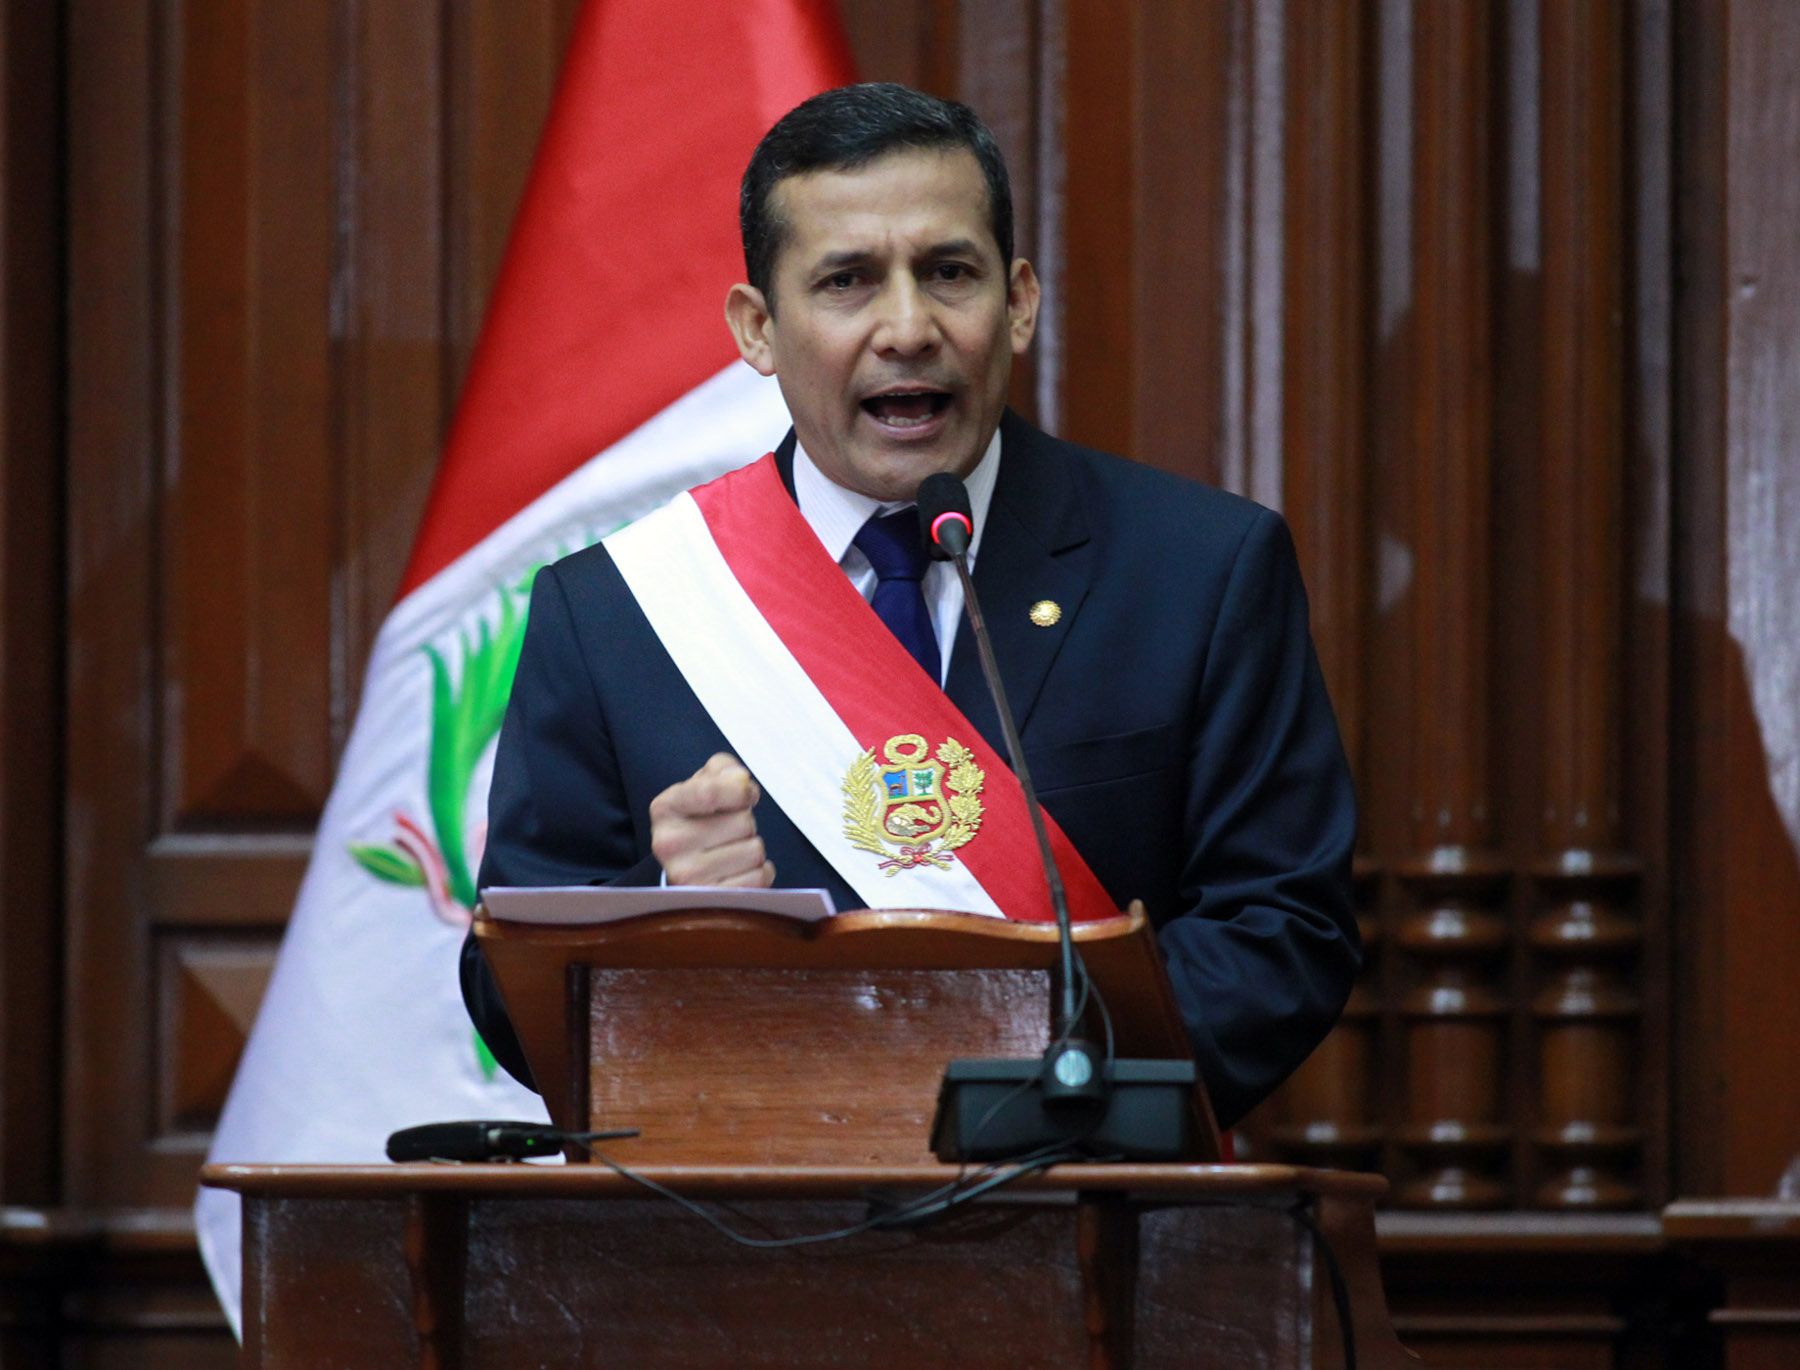 El Presidente Ollanta Humala Tasso dirige su mensaje a la Nación tras jurar al cargo en sesión solemne del Congreso de la República. 
Foto: ANDINA/Carlos Lezama